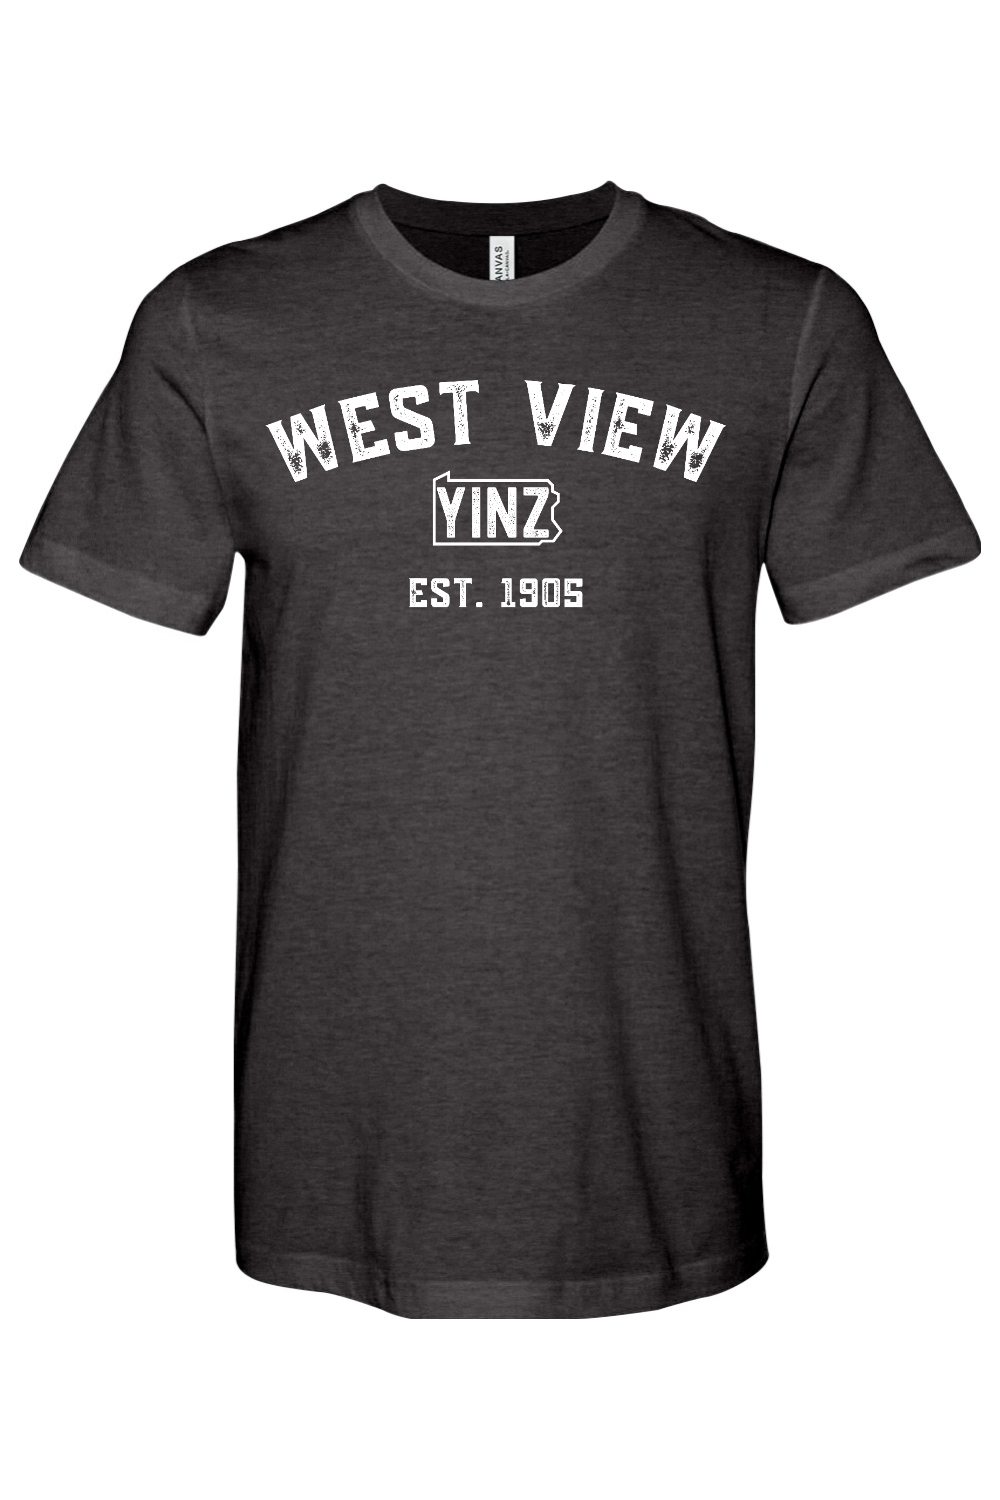 West View Yinzylvania - Yinzylvania